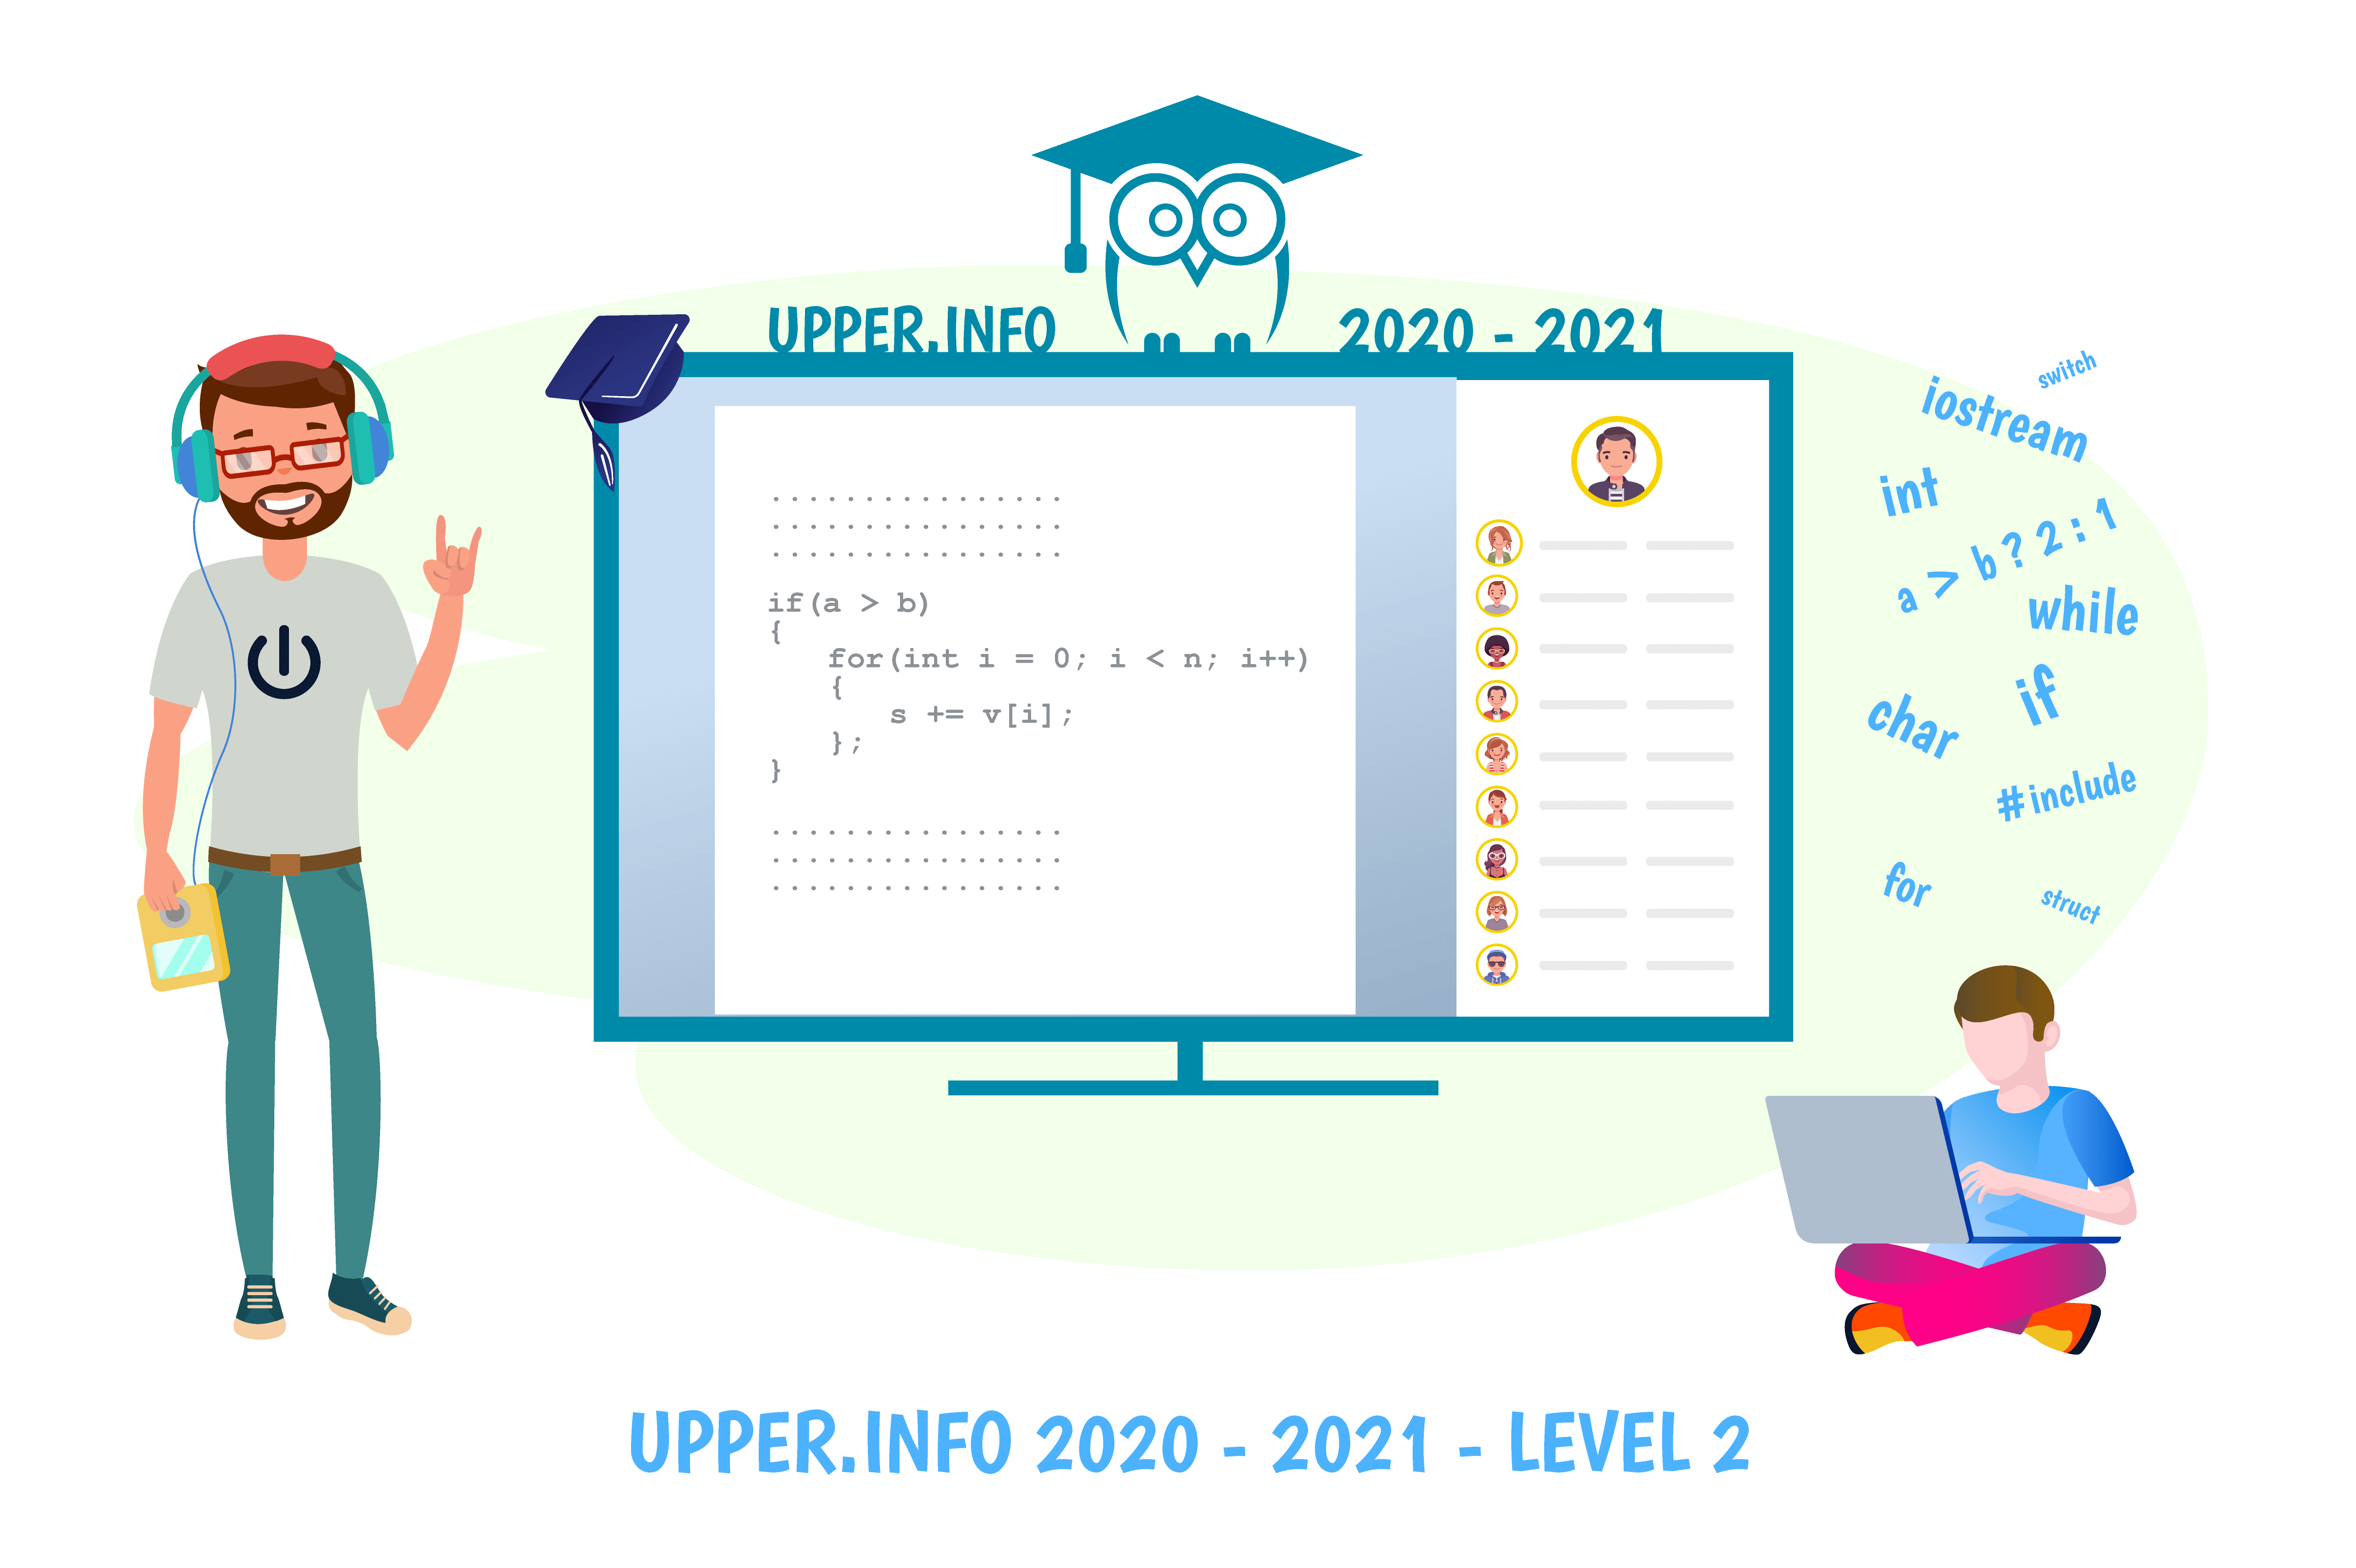 Upper.Info 2020-2021 Level 2